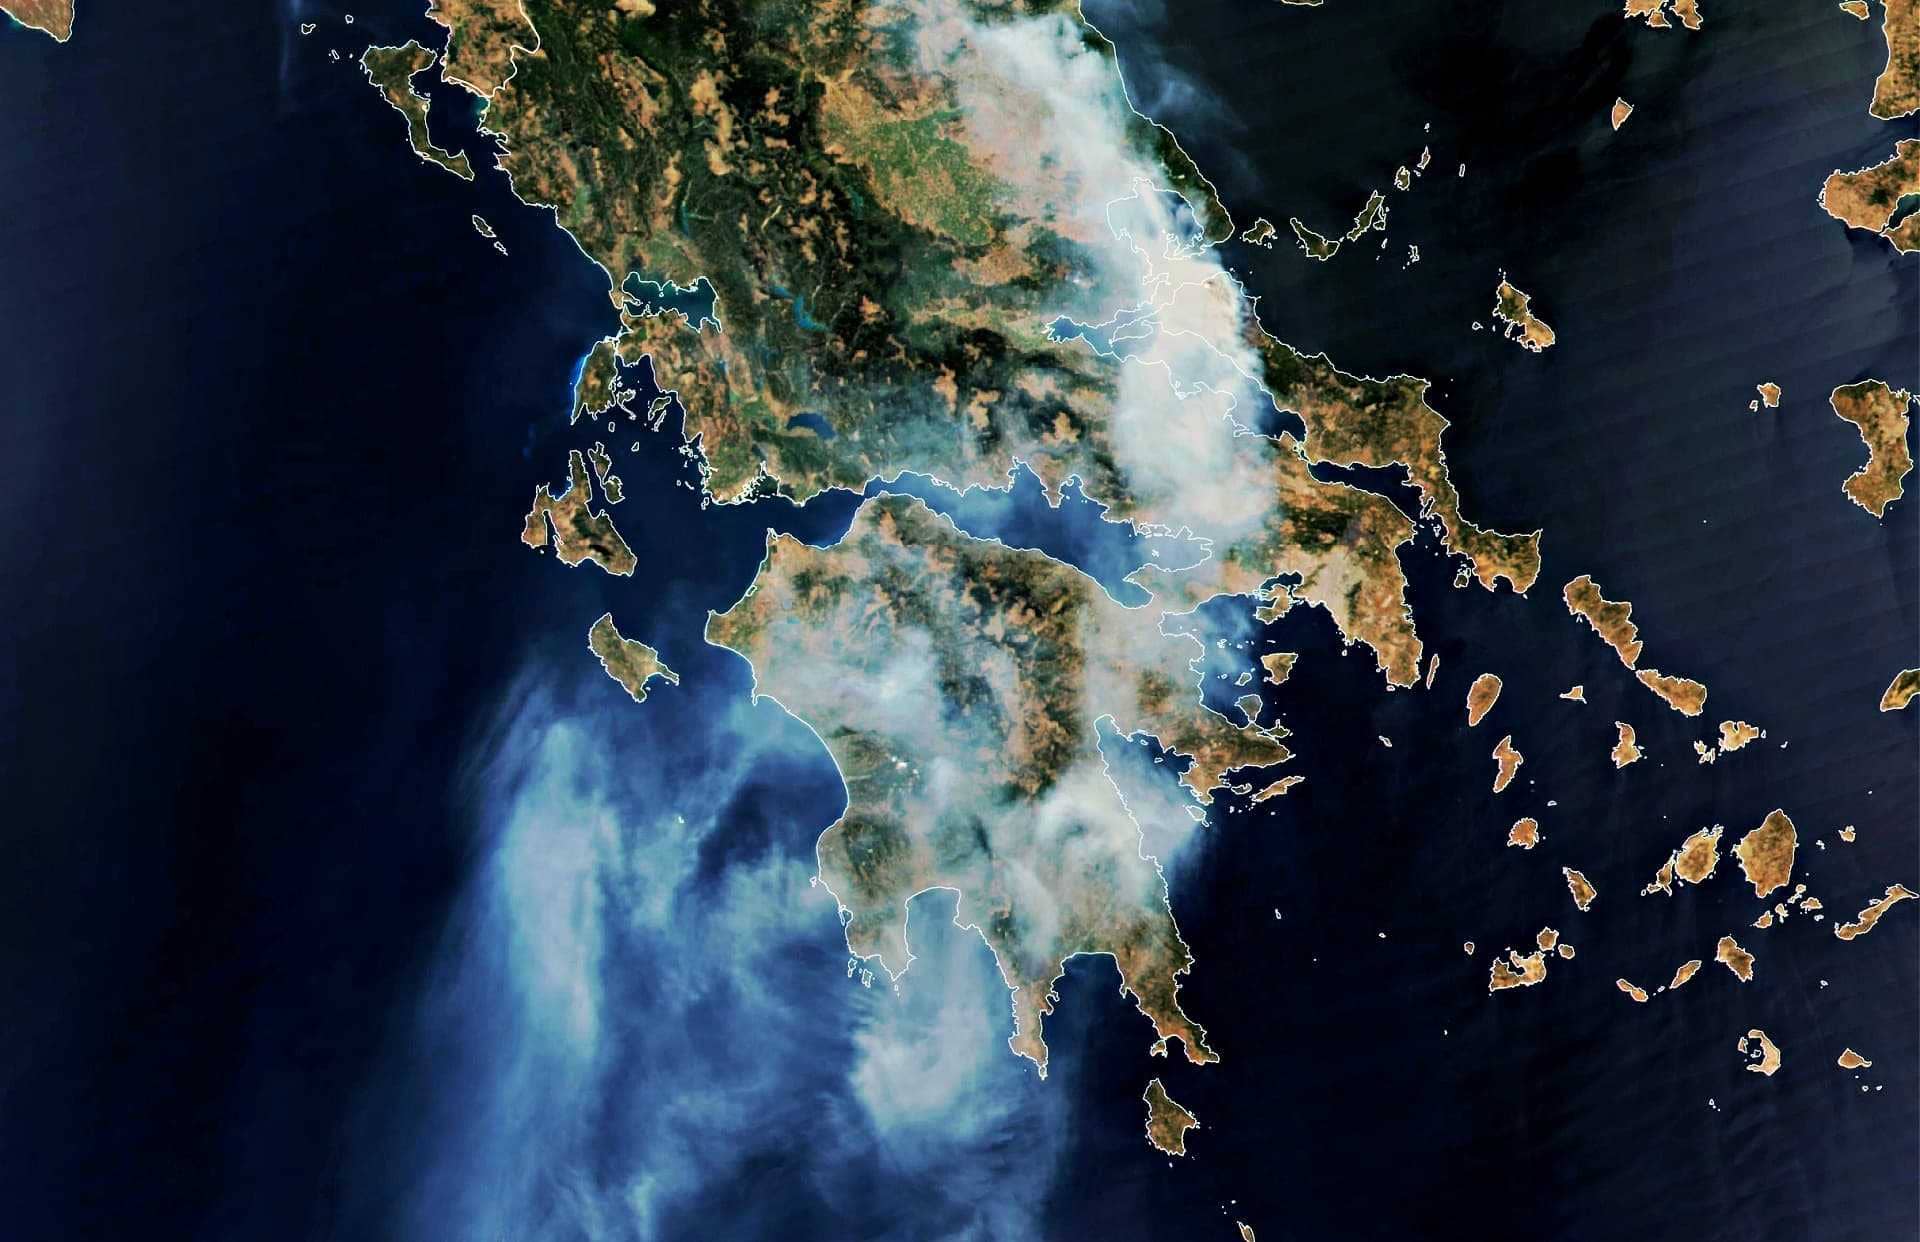 επιχείρηση-Ευρώπη-παραγωγή-καύσωνας-θανατηφόρες-πυρκαγιές-απειλούν-η-πλησιάζει-συγκομιδή ελιάς-στην-Ελλάδα-ελαιόλαδο-φορές